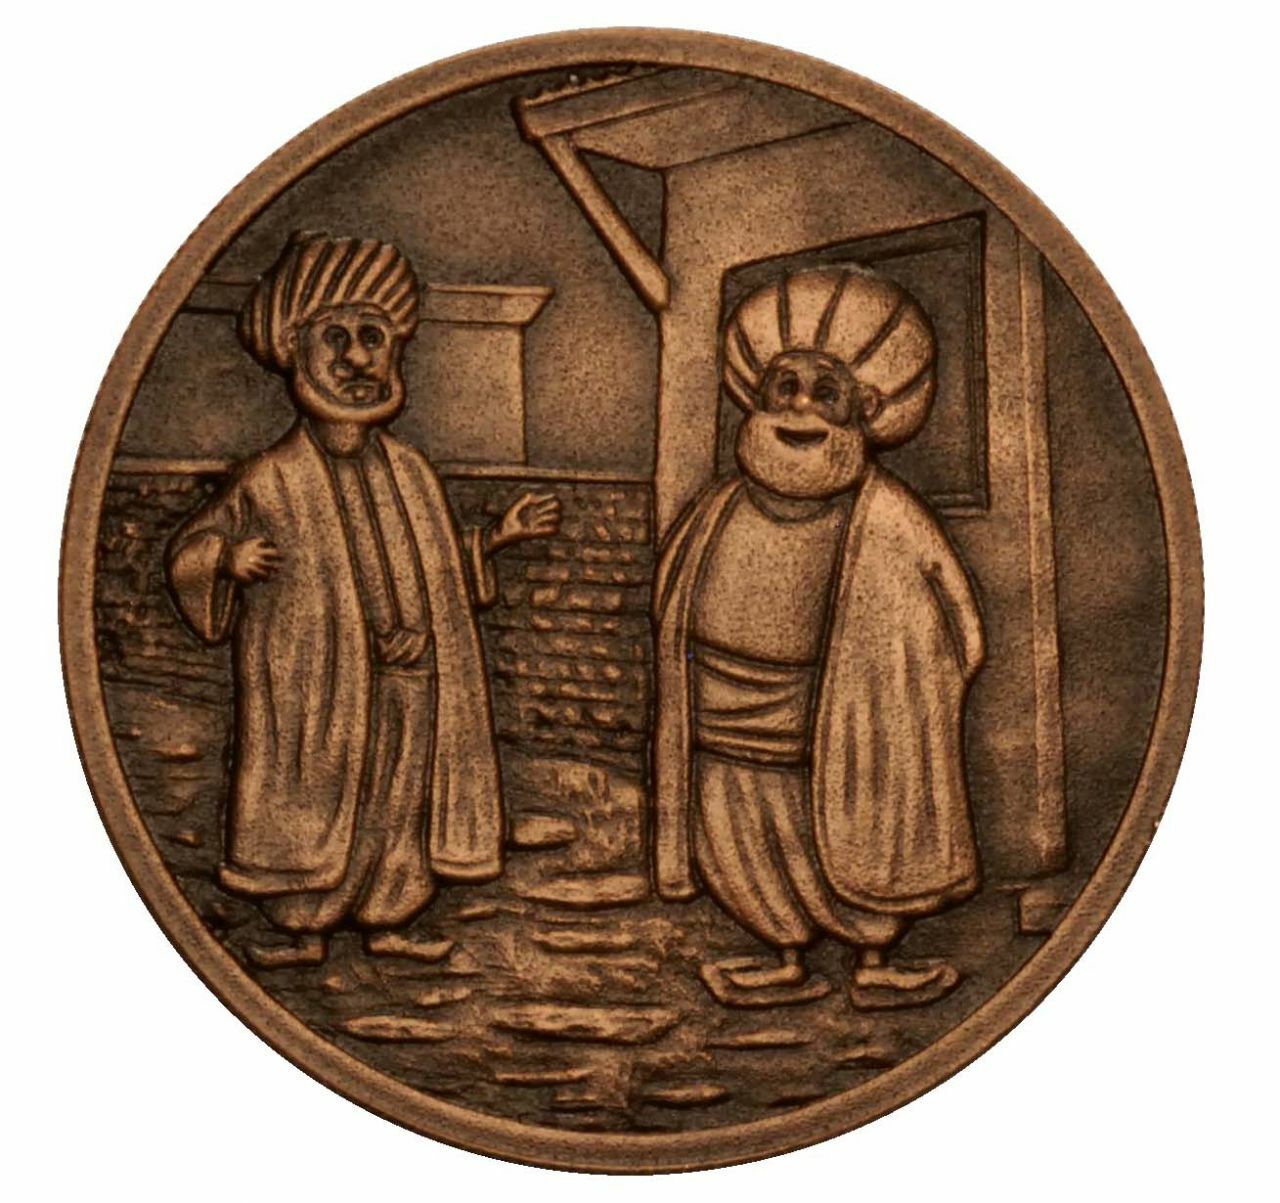 Turkey 2021, Nasreddin Hodja 7, Bronze Commemorative Coin, Unc